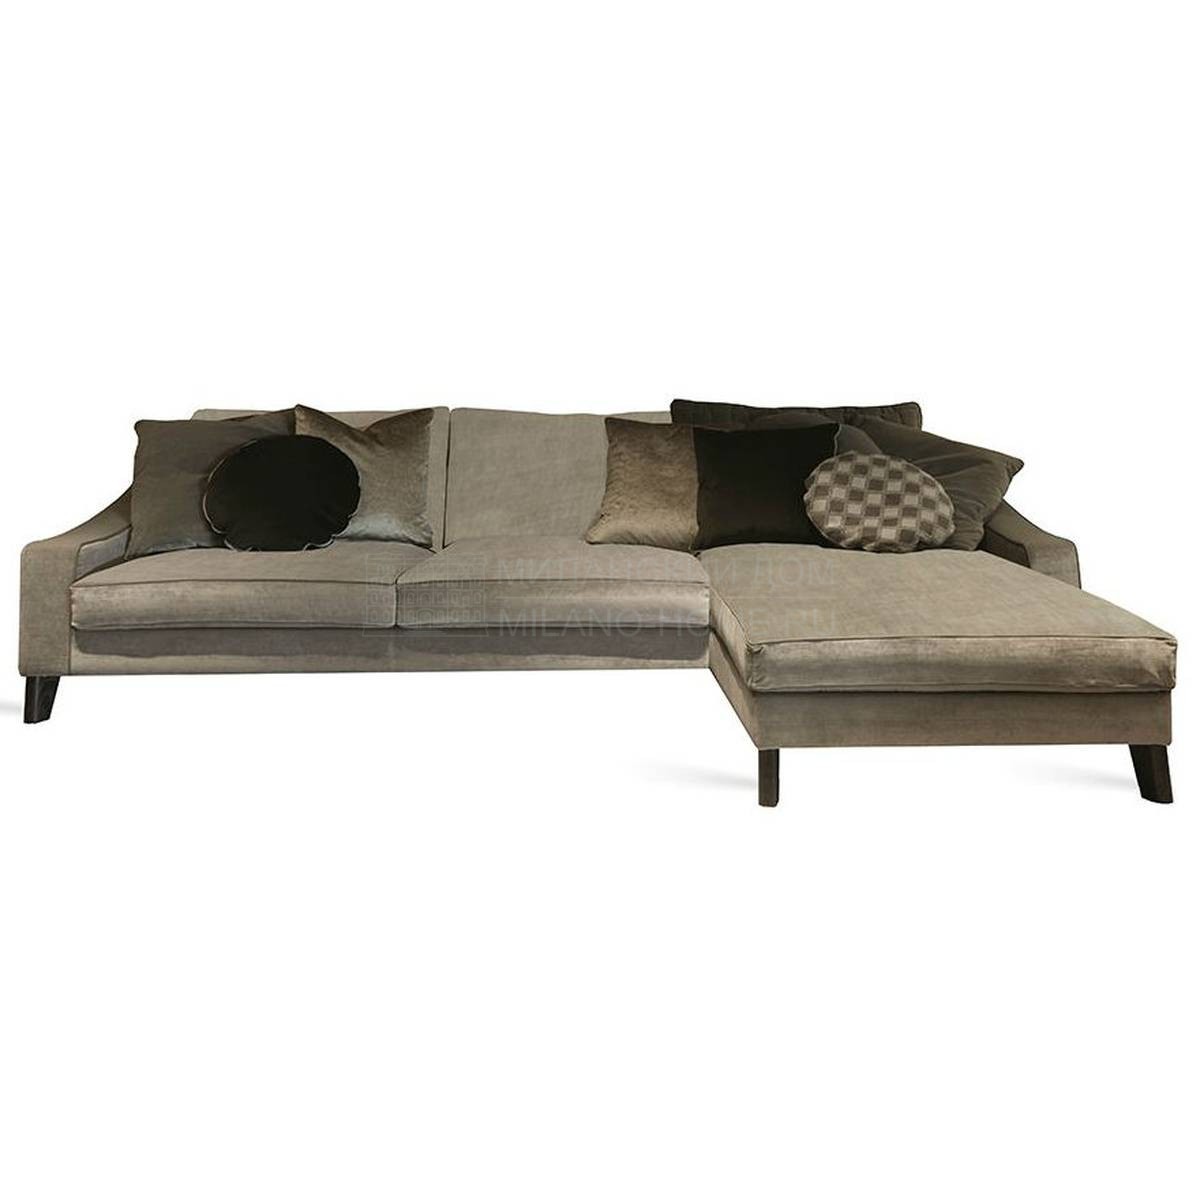 Угловой диван New Bond sofa из Италии фабрики MEDEA (Life style)